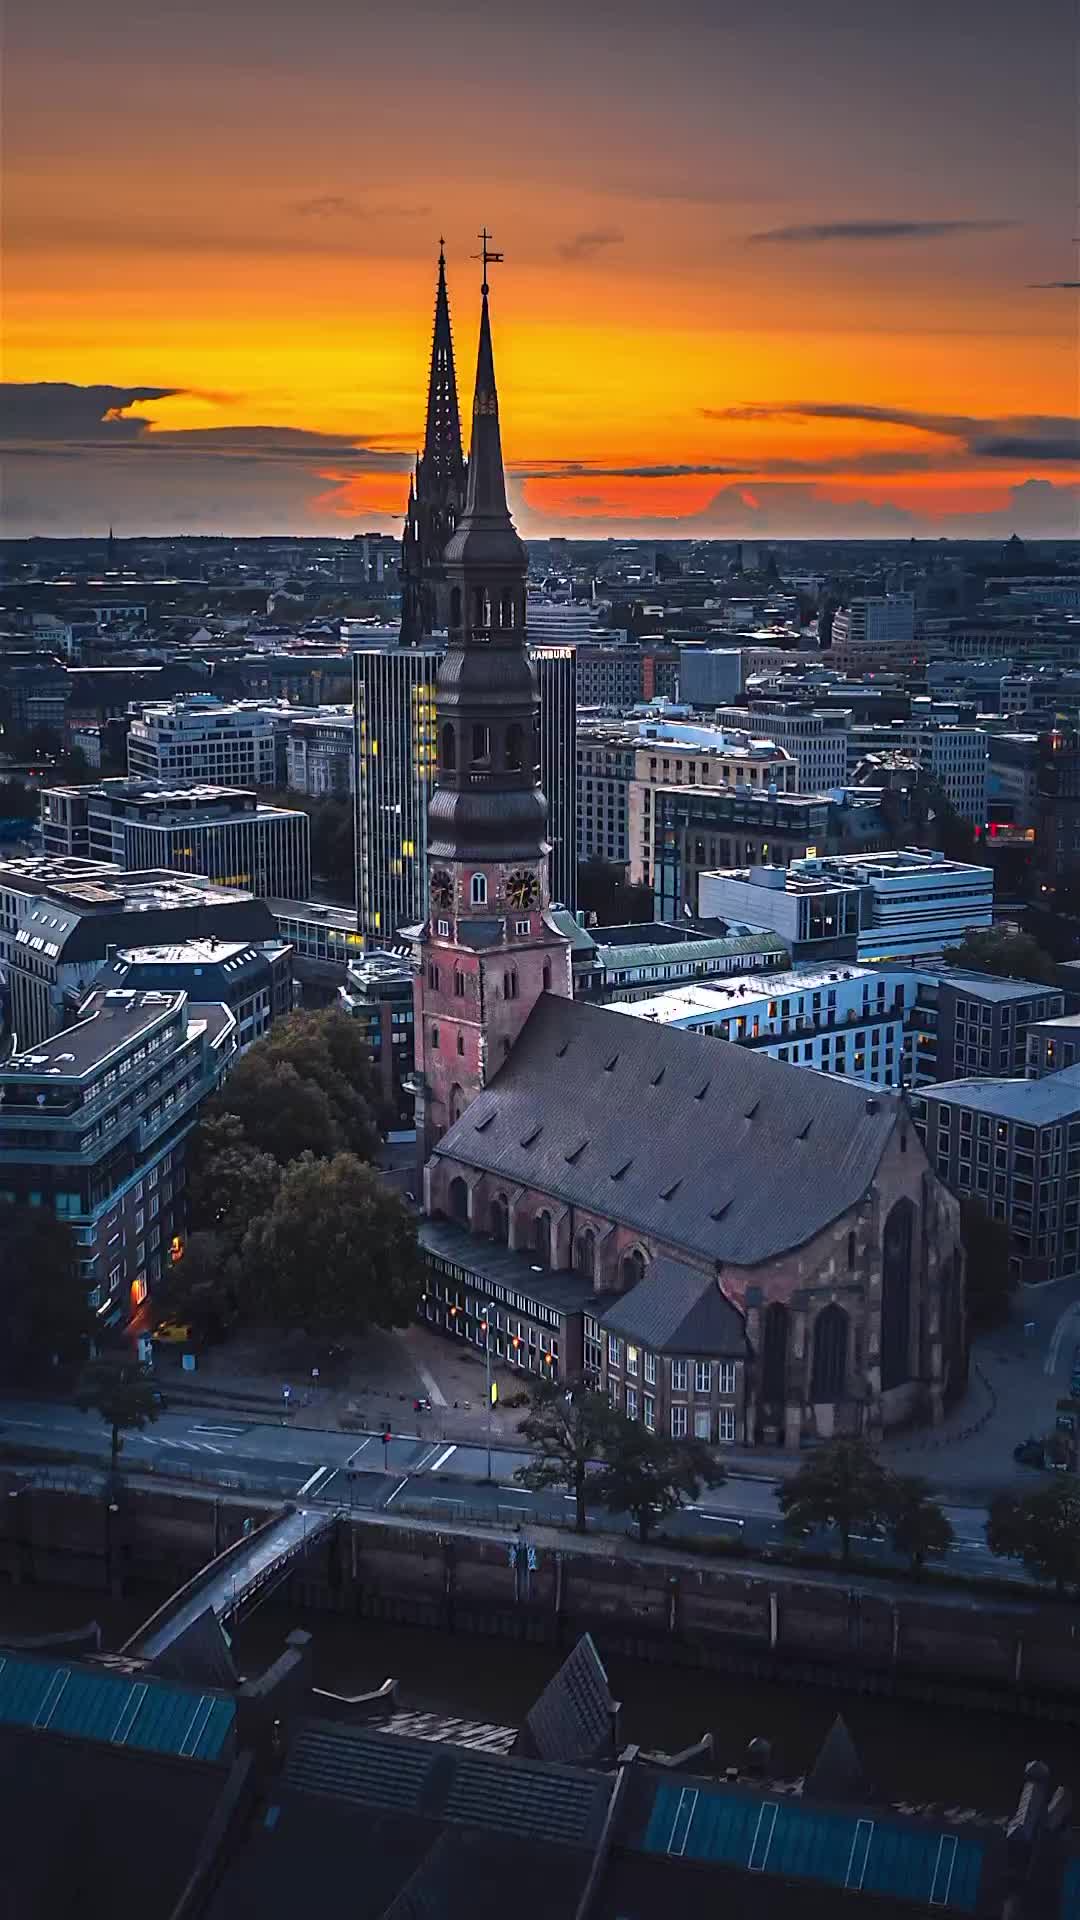 Stunning Hamburg City Views at St. Katharinen Church